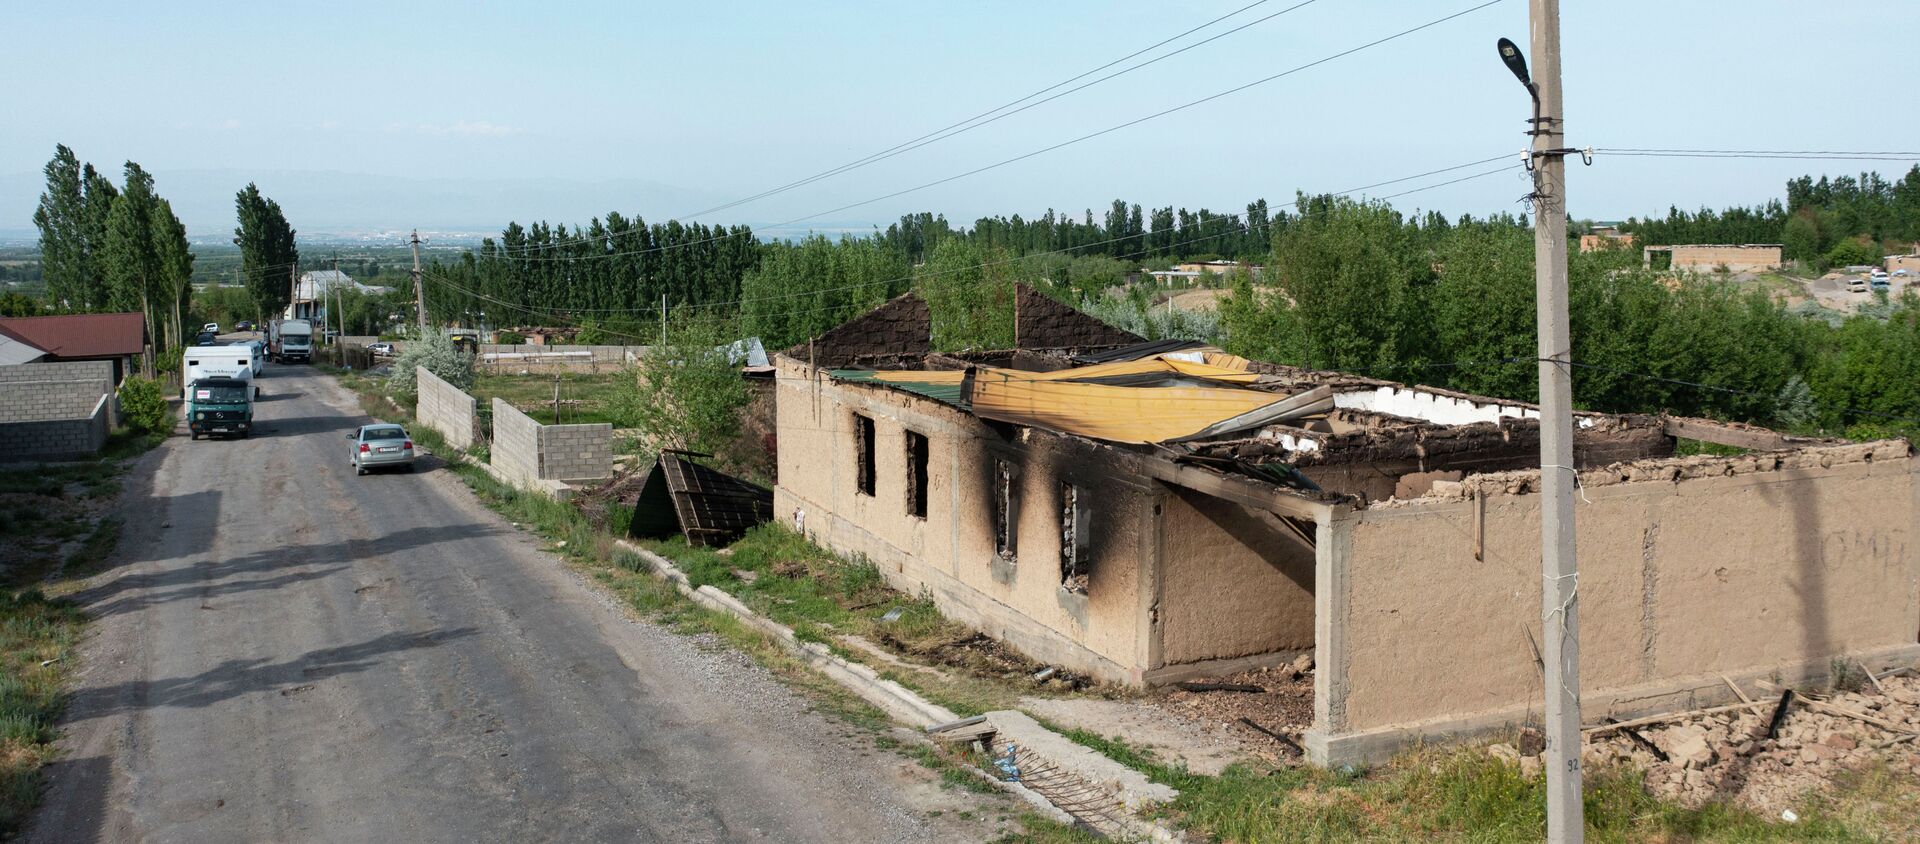 Вид с дрона на сгоревшие здания в селе Максат, после конфликта с Таджикистаном - Sputnik Кыргызстан, 1920, 04.05.2021